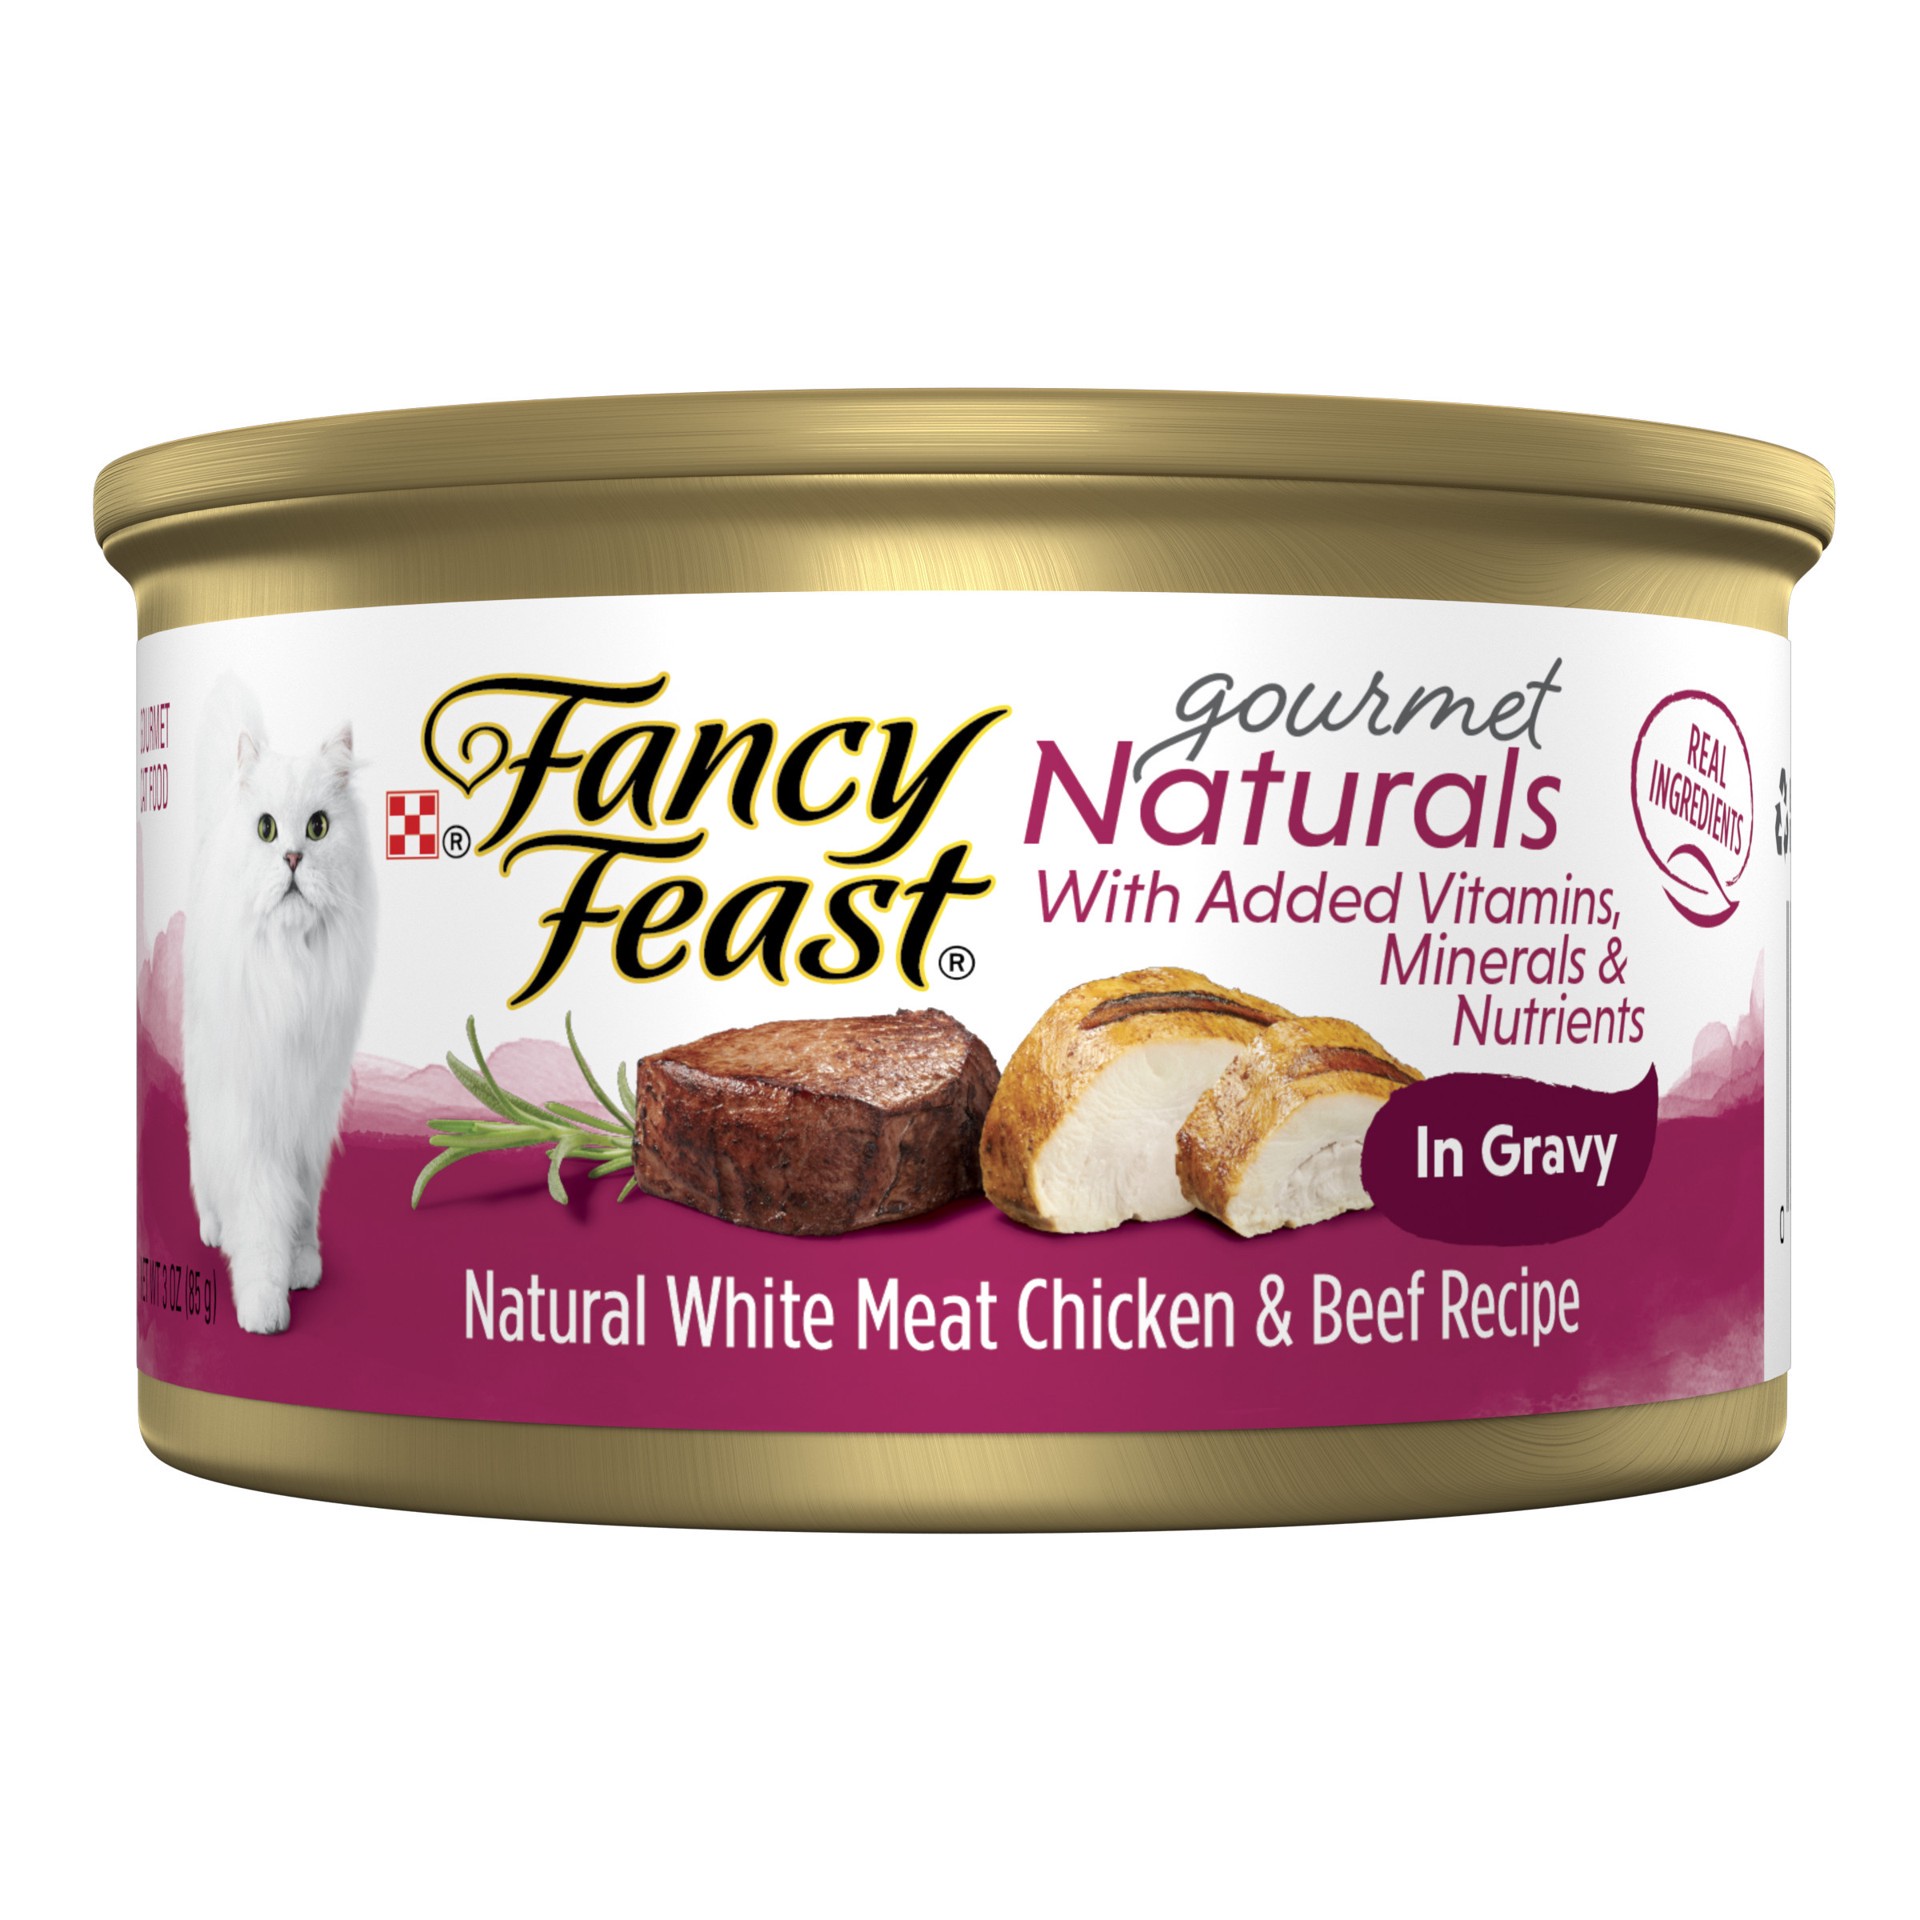 slide 1 of 8, Fancy Feast Gourmet Naturals Wet Cat Food Purina Fancy Feast Gourmet Naturals Natural White Meat Chicken & Beef, 3 oz